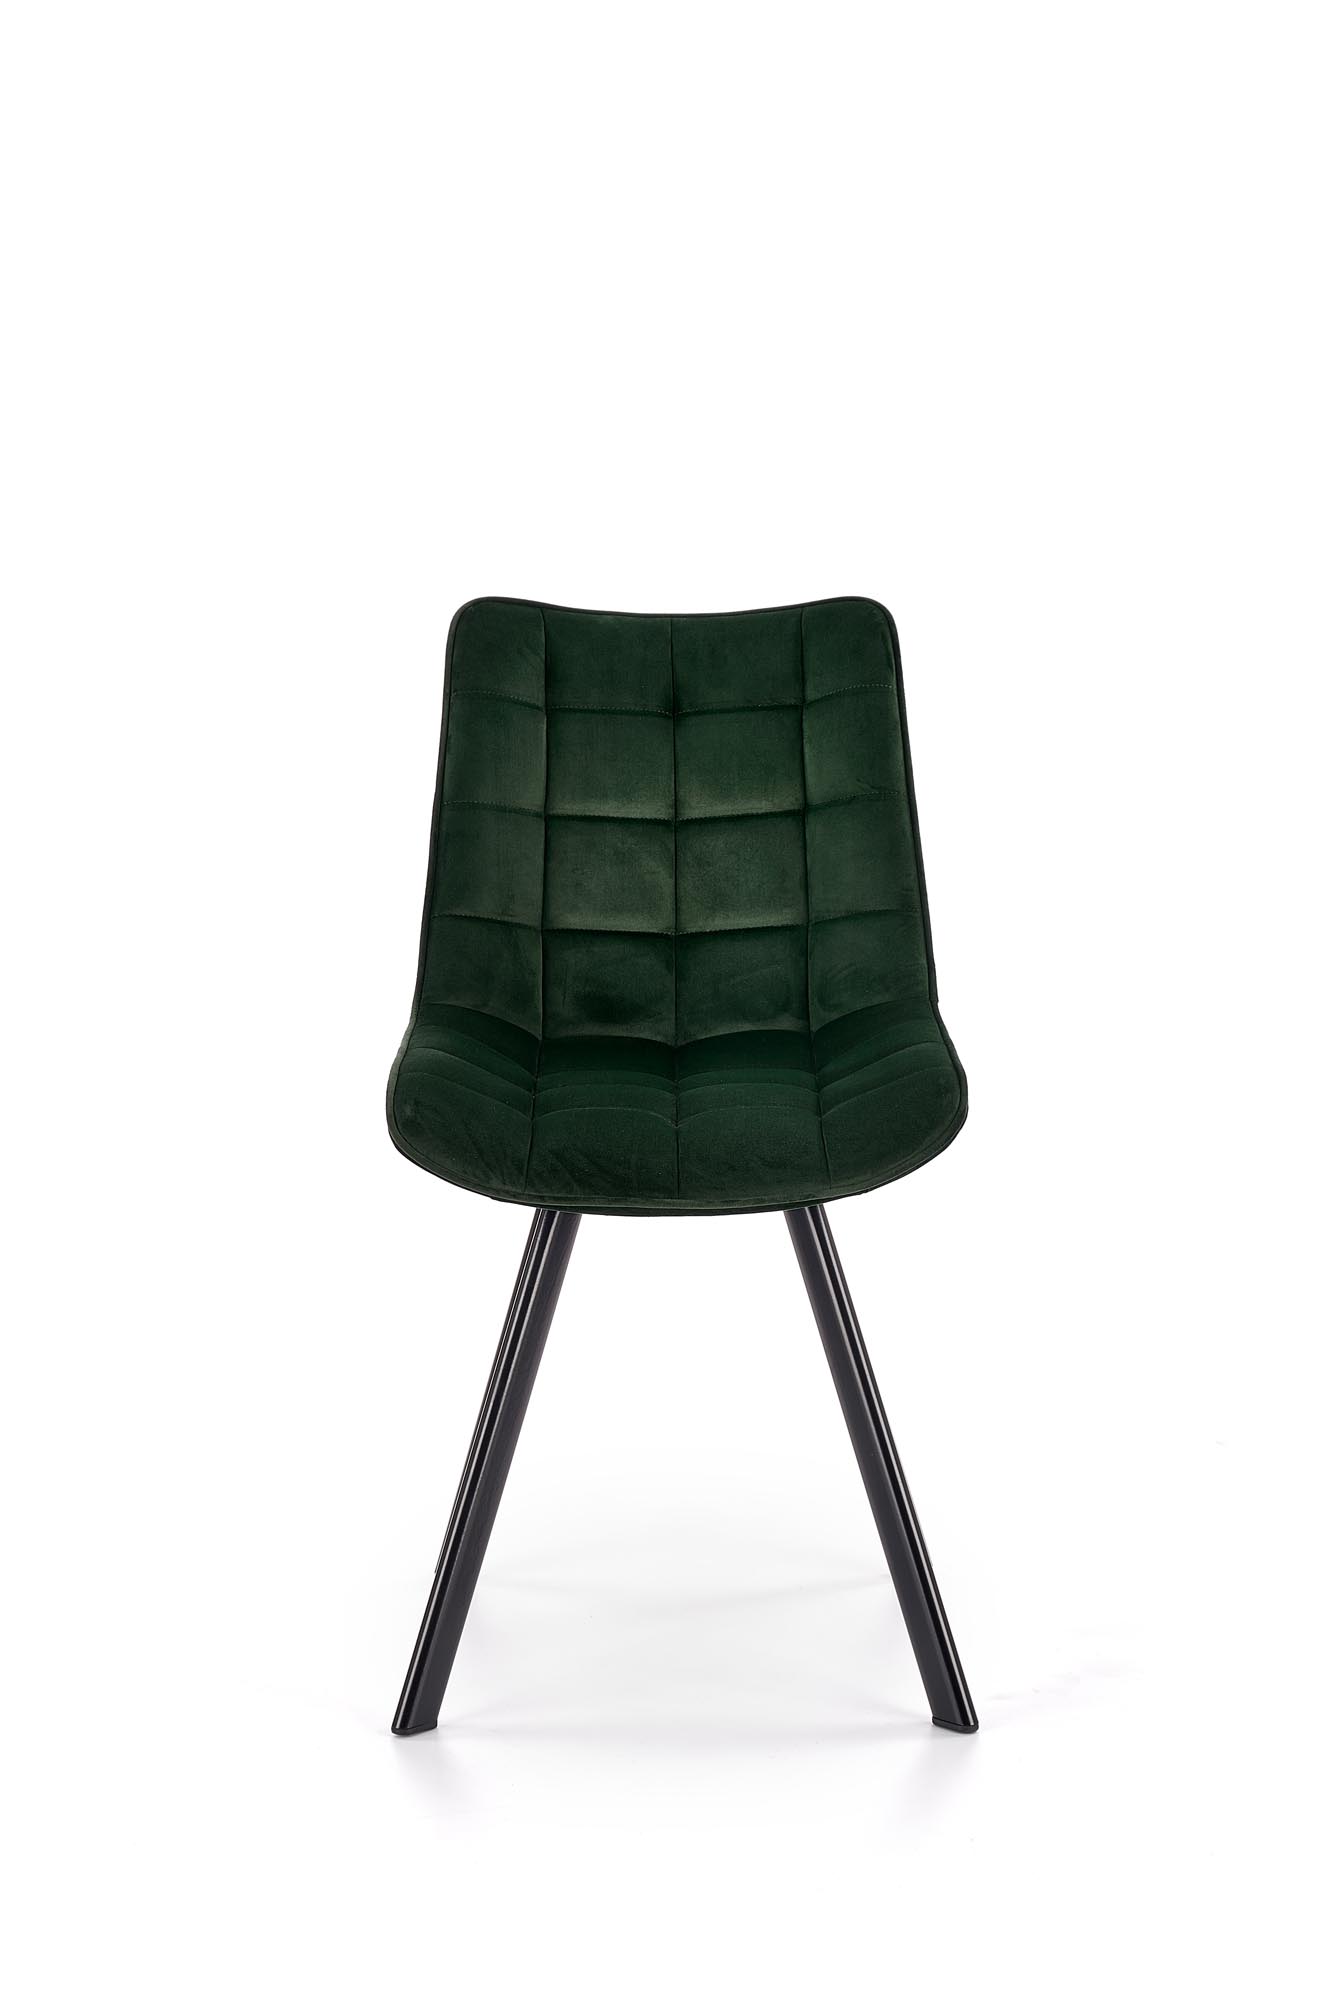 Čalouněná židle K332 - tmavě zelená Židle čalouněné k332 - tmavý Zelený